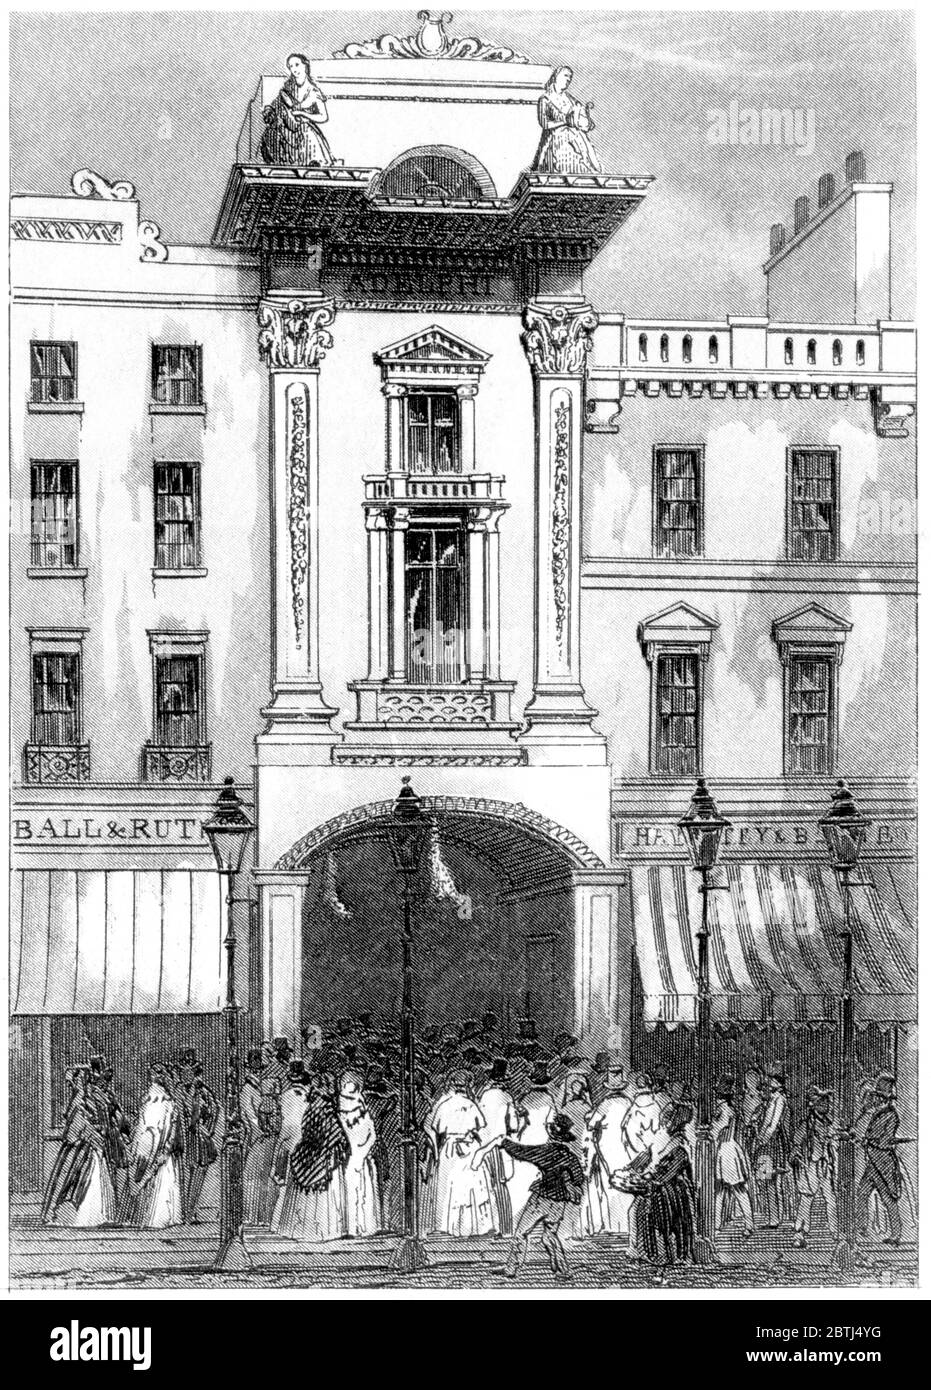 Ein Stich des Adelphi Theatre London, gescannt in hoher Auflösung aus einem 1851 gedruckten Buch. Dieses Bild ist frei von jegl. Copyright. Stockfoto